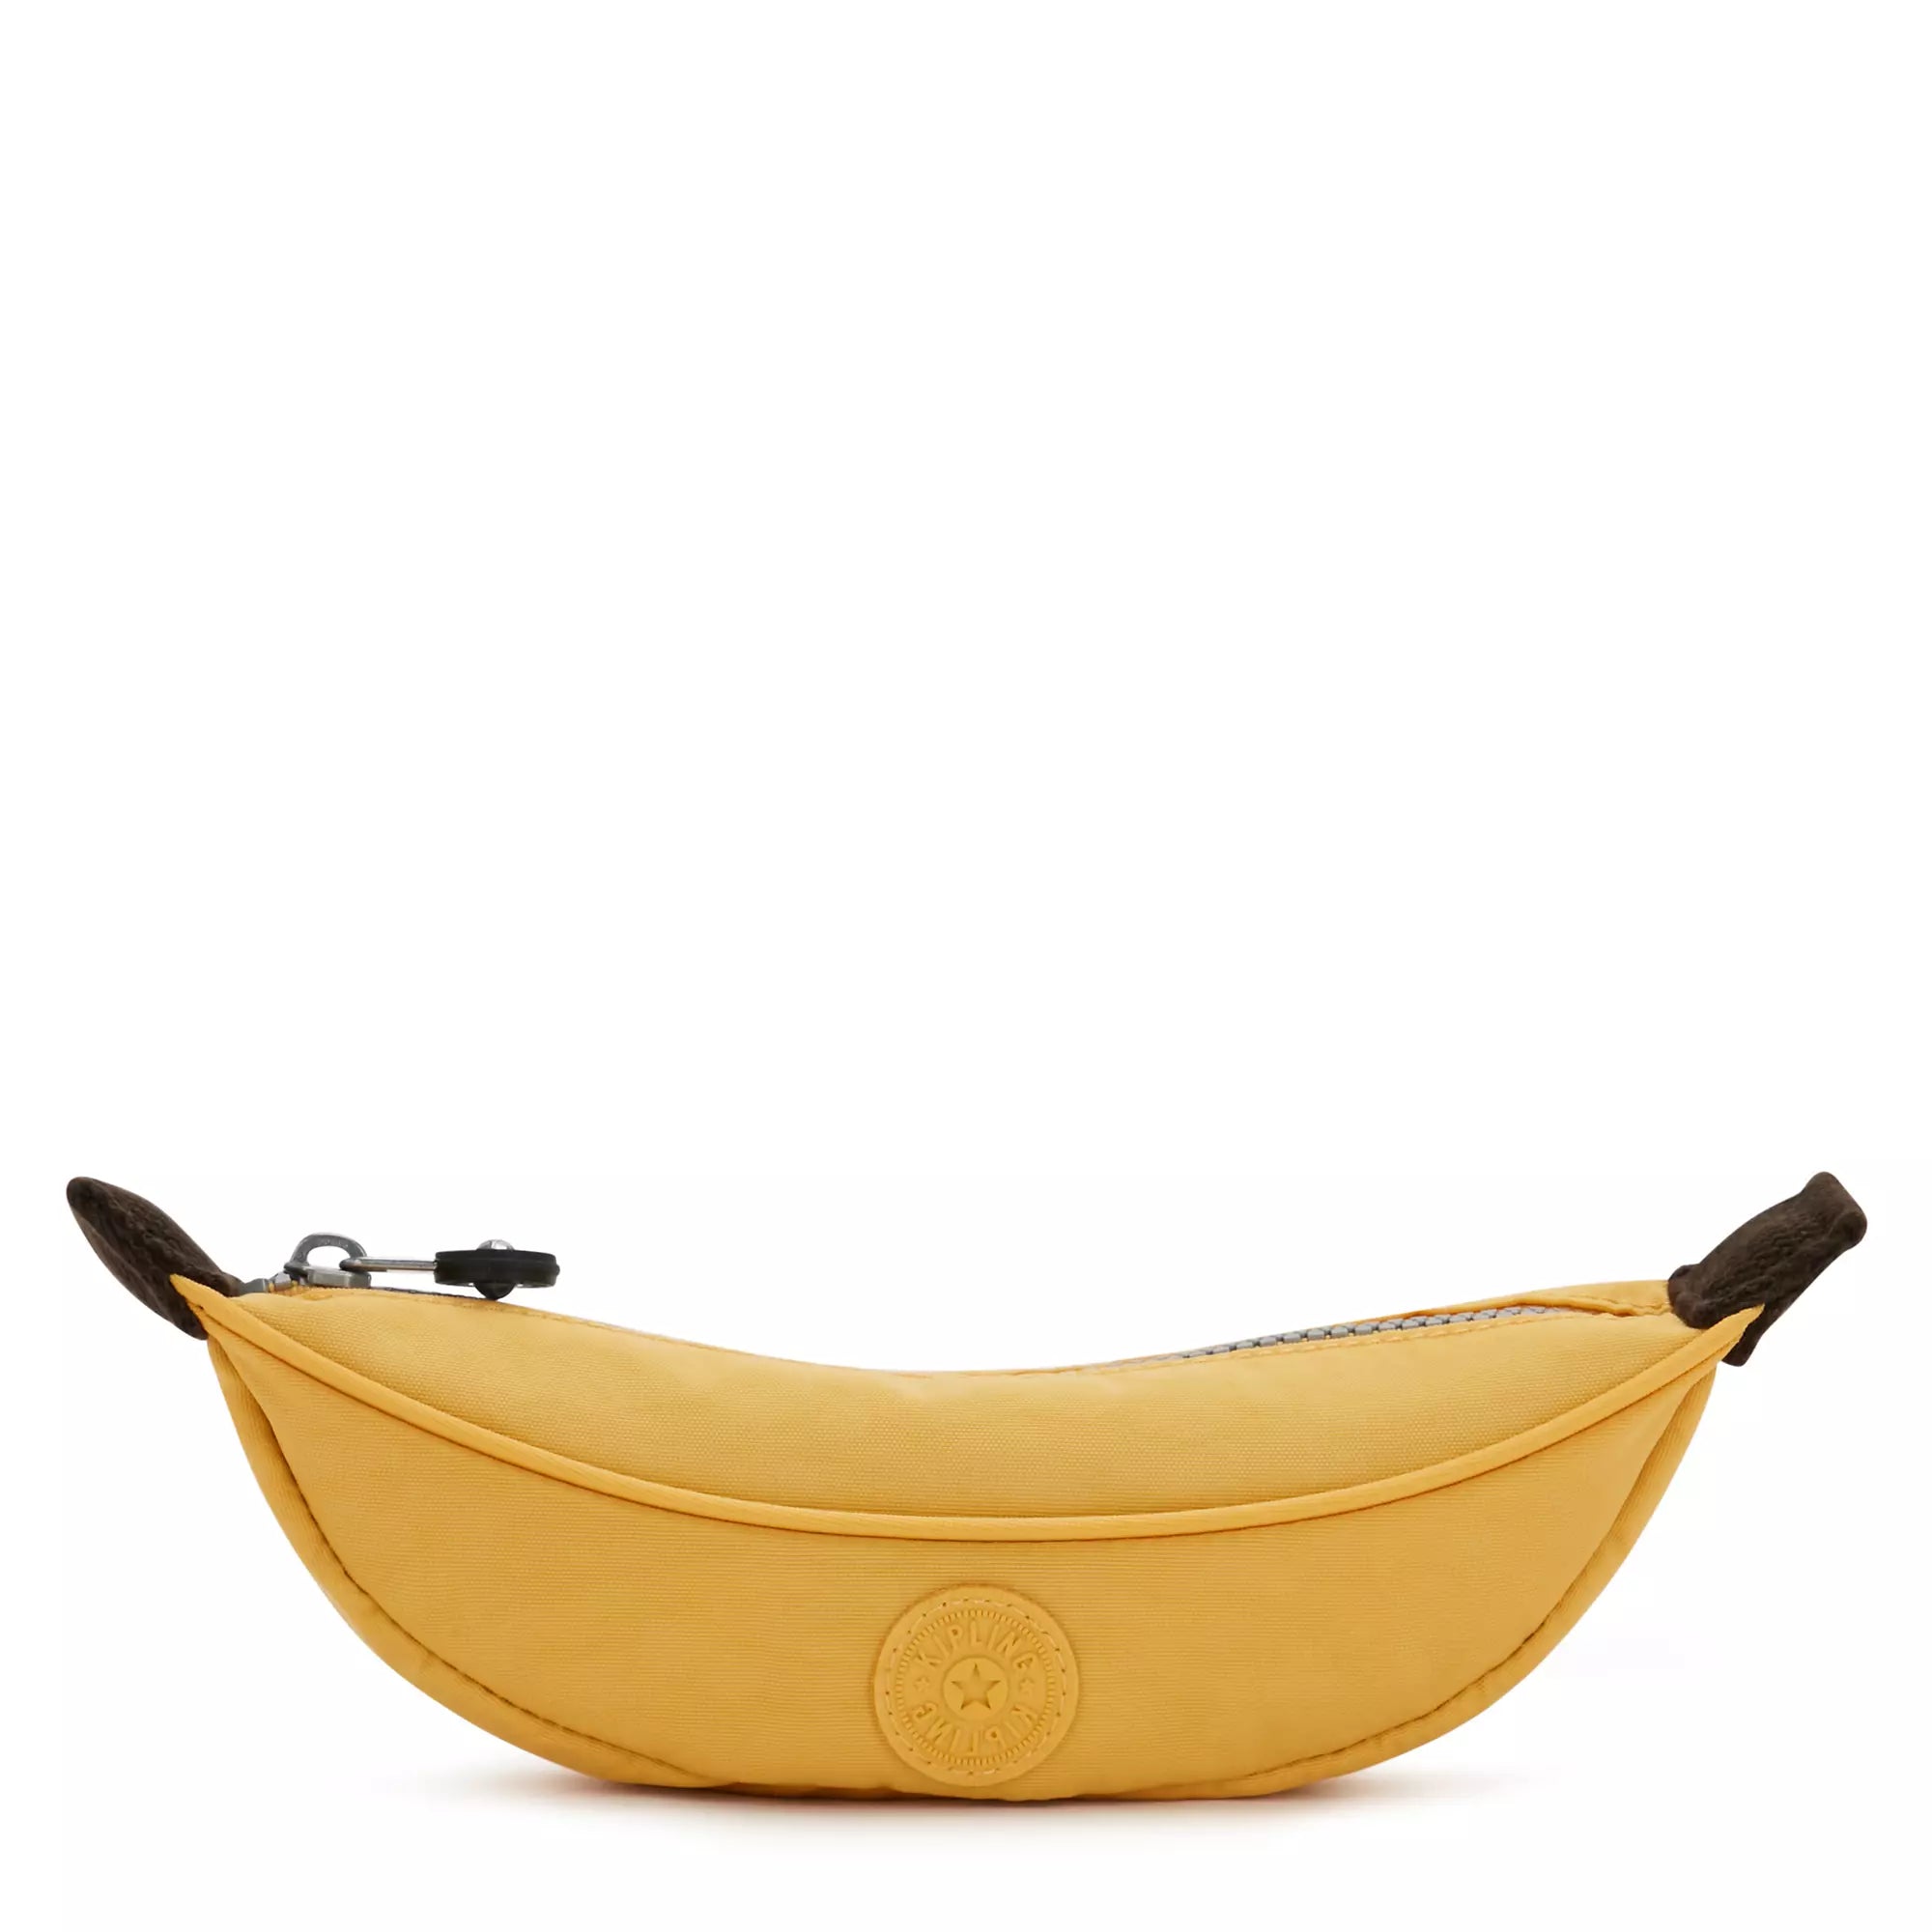 Banana Pencil Case - Voyage Luggage